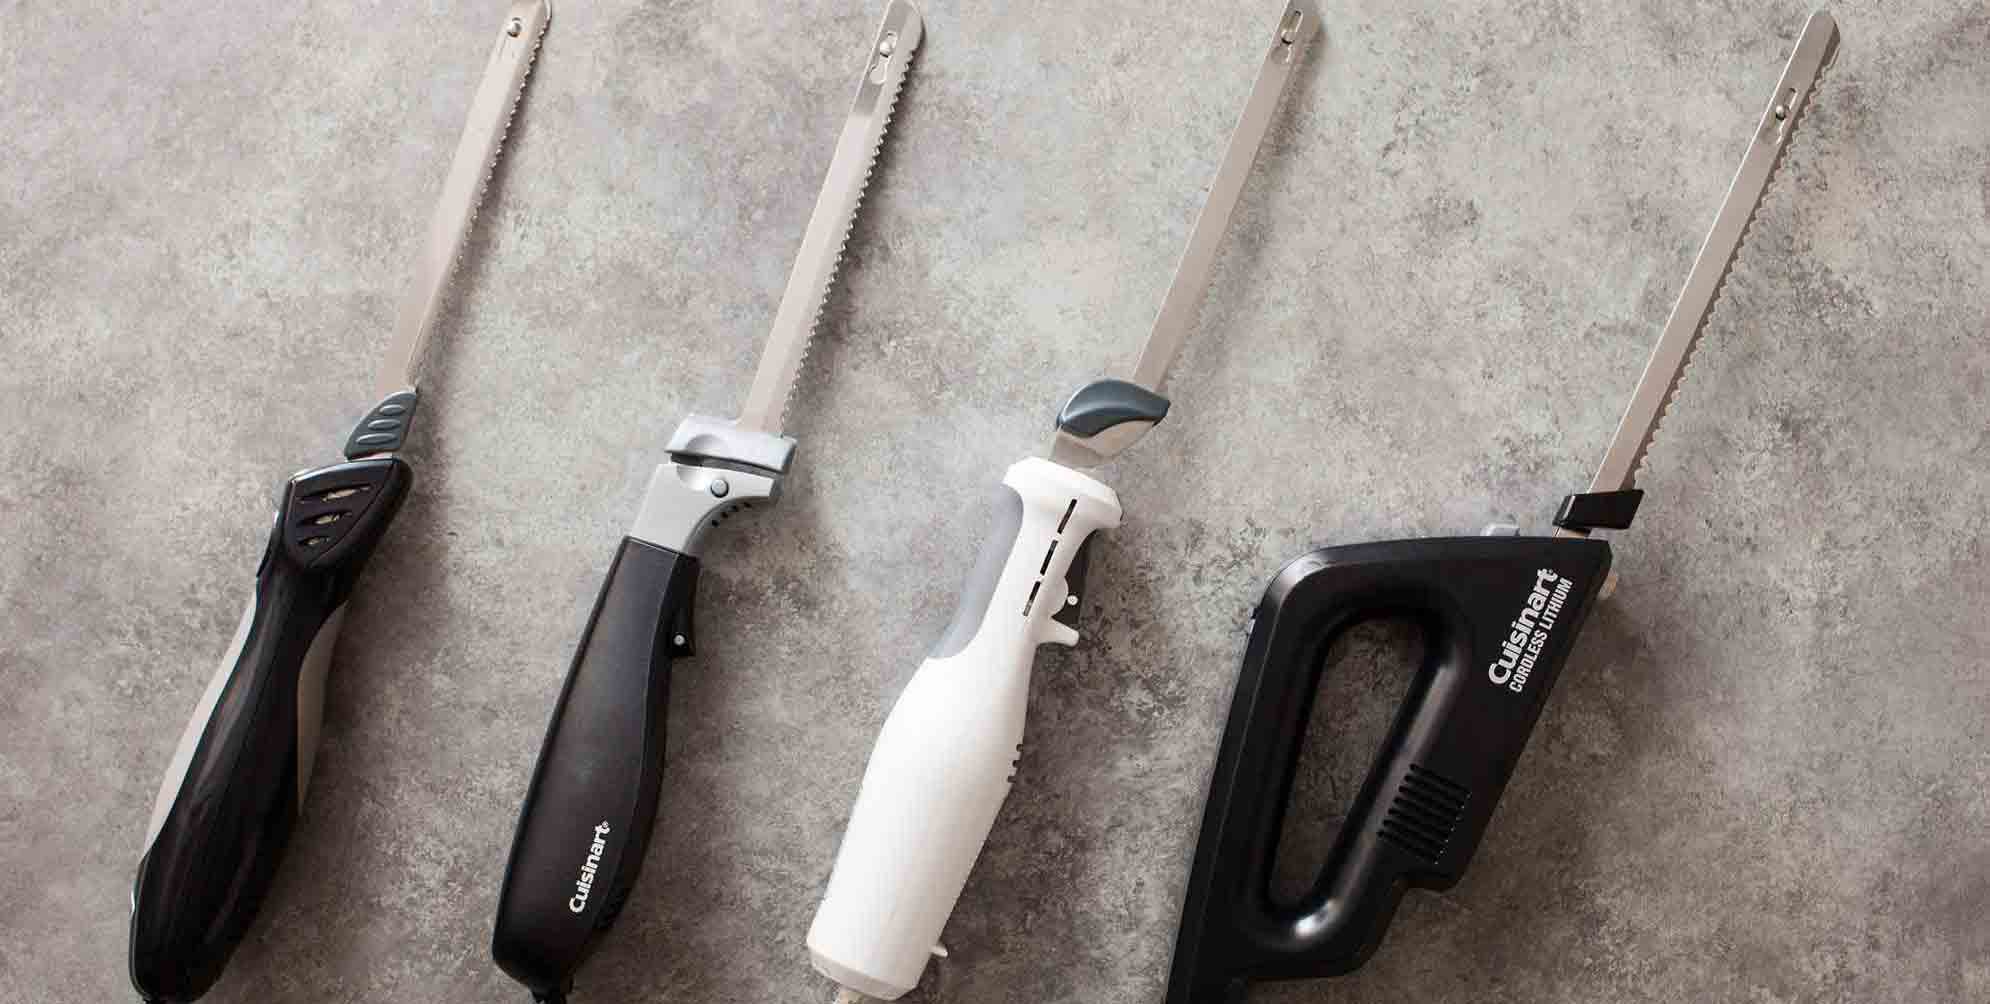 Couteau électrique pain et viande - Blanc / Gris